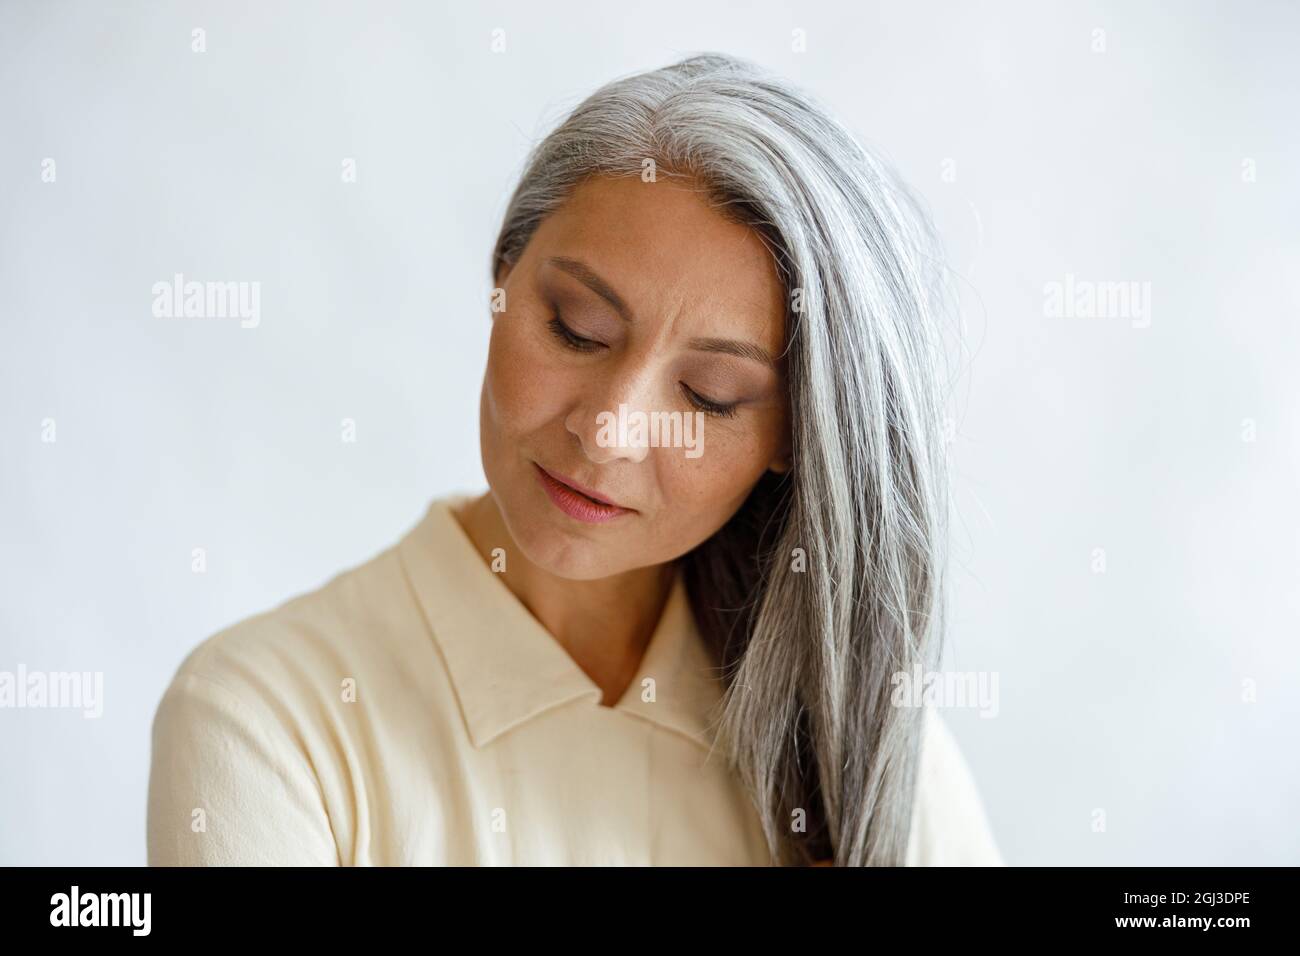 Ruhige asiatische Frau mittleren Alters mit lockeren silbernen Haaren, die auf hellem Hintergrund posiert Stockfoto